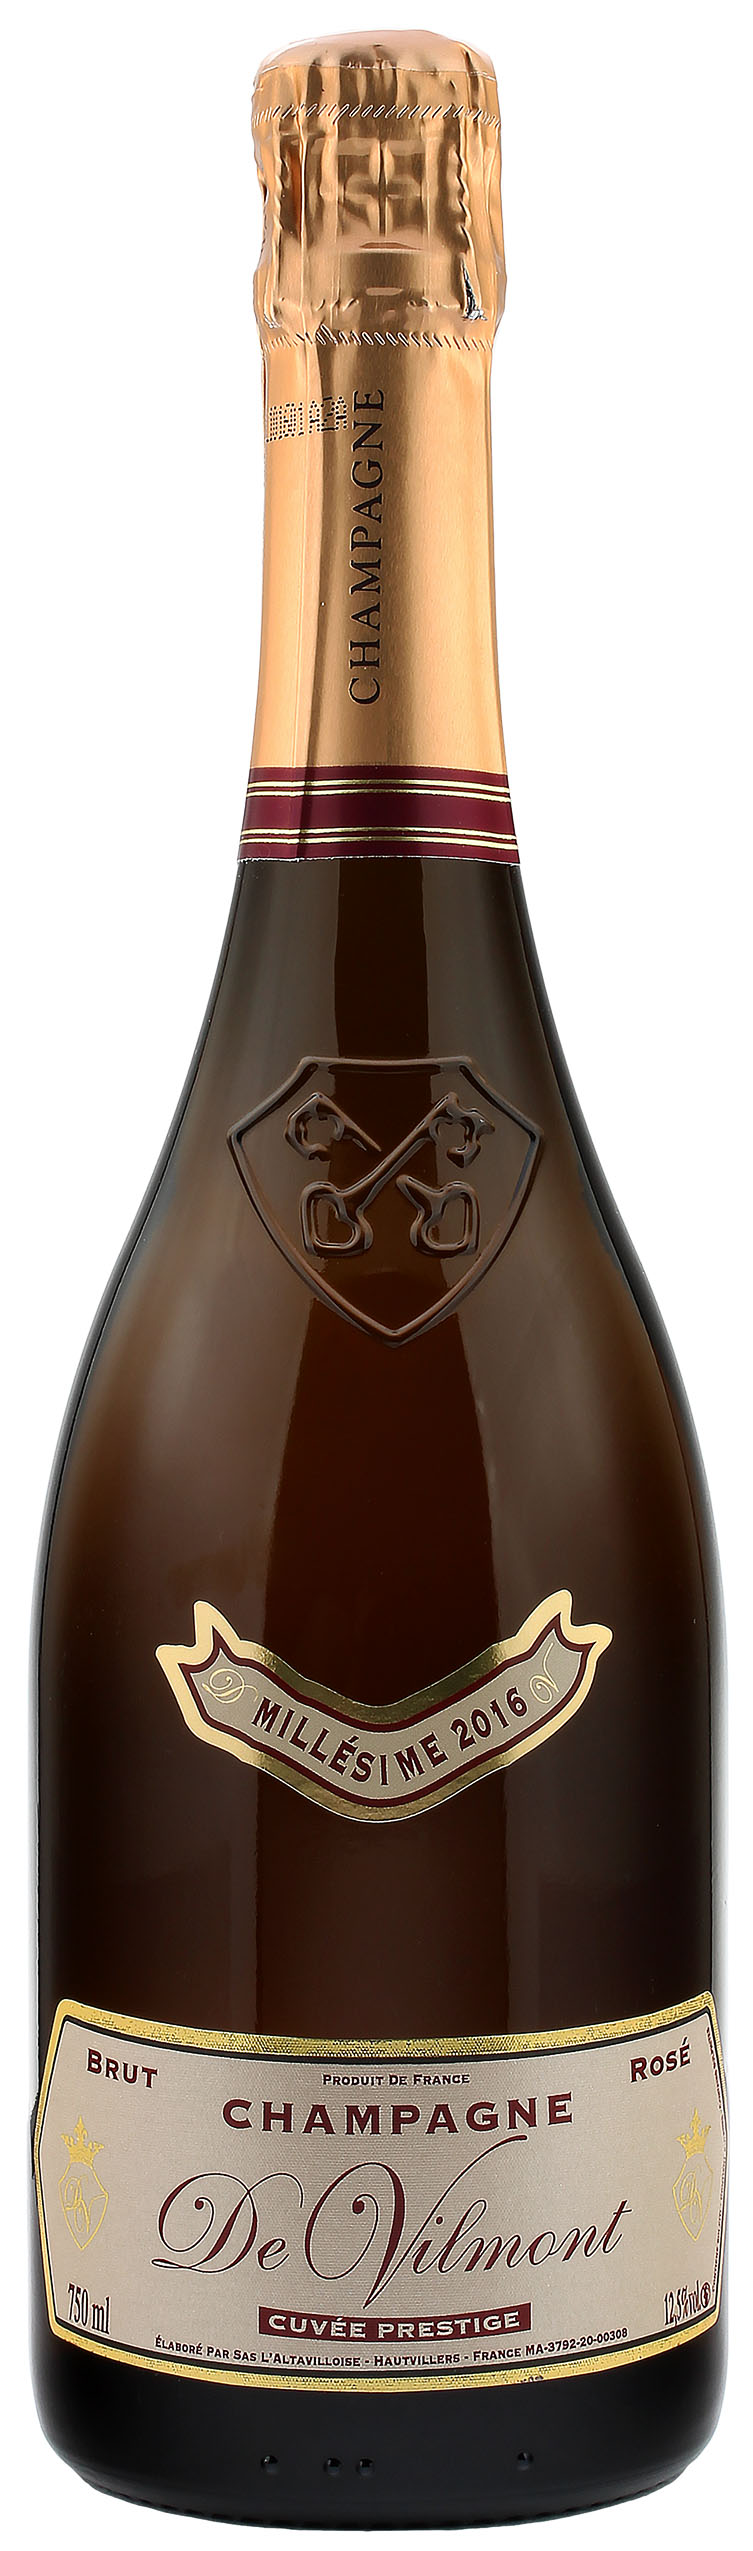 De Vilmont Champagne Cuvée Prestige Millésime Rosé 12.5% 0,75l